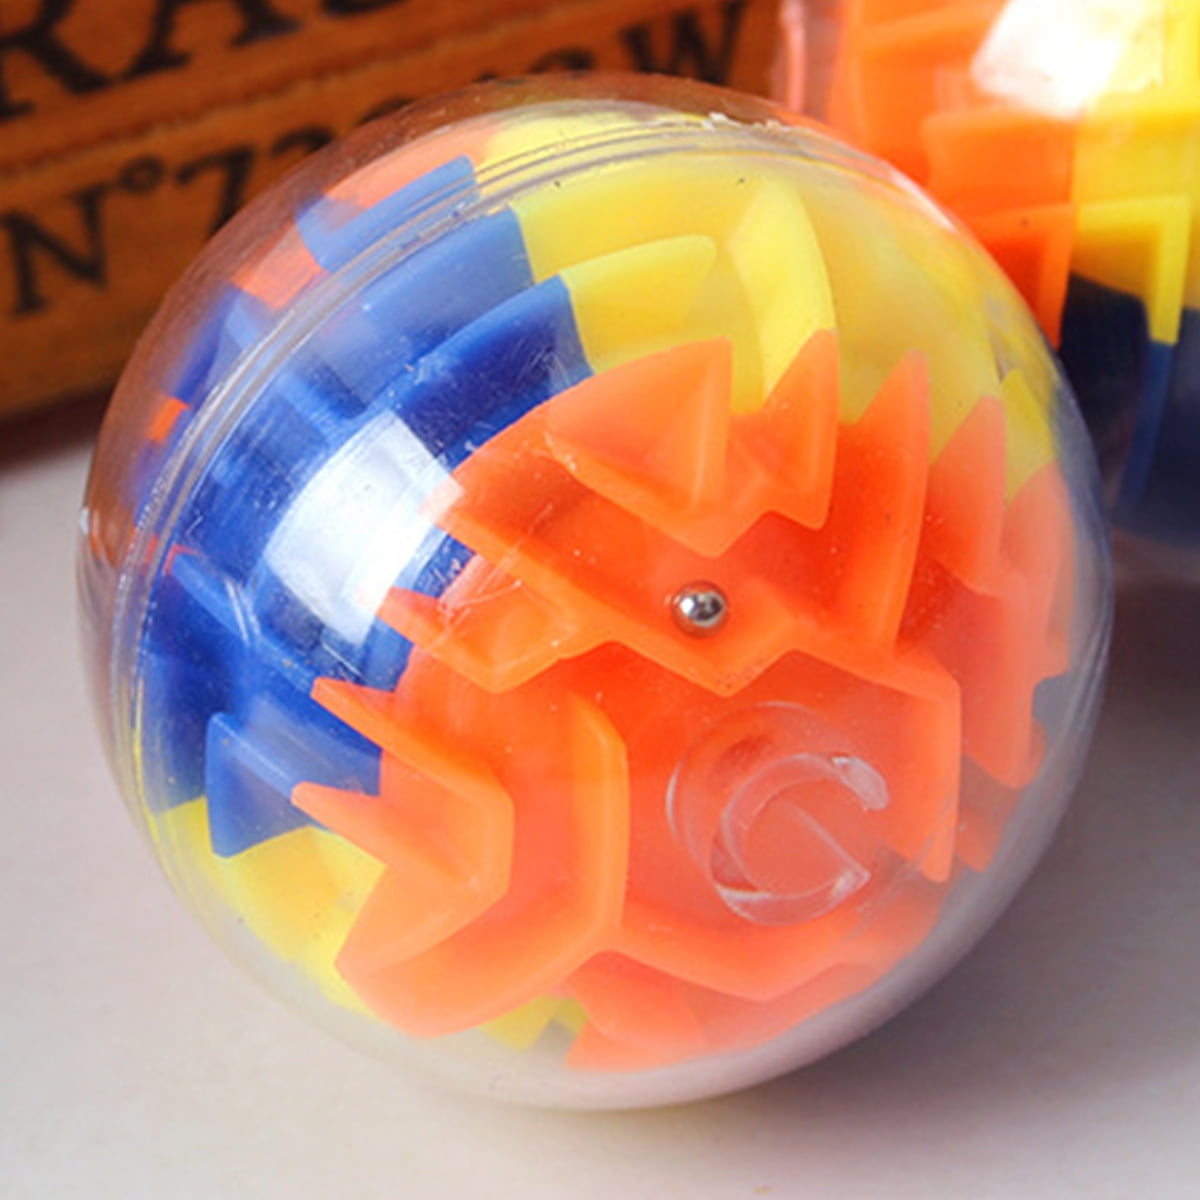 Details about   12PCS Sensory Fidget Bundle Set Kids Toy Special Needs Autism Stress Relief Tool 